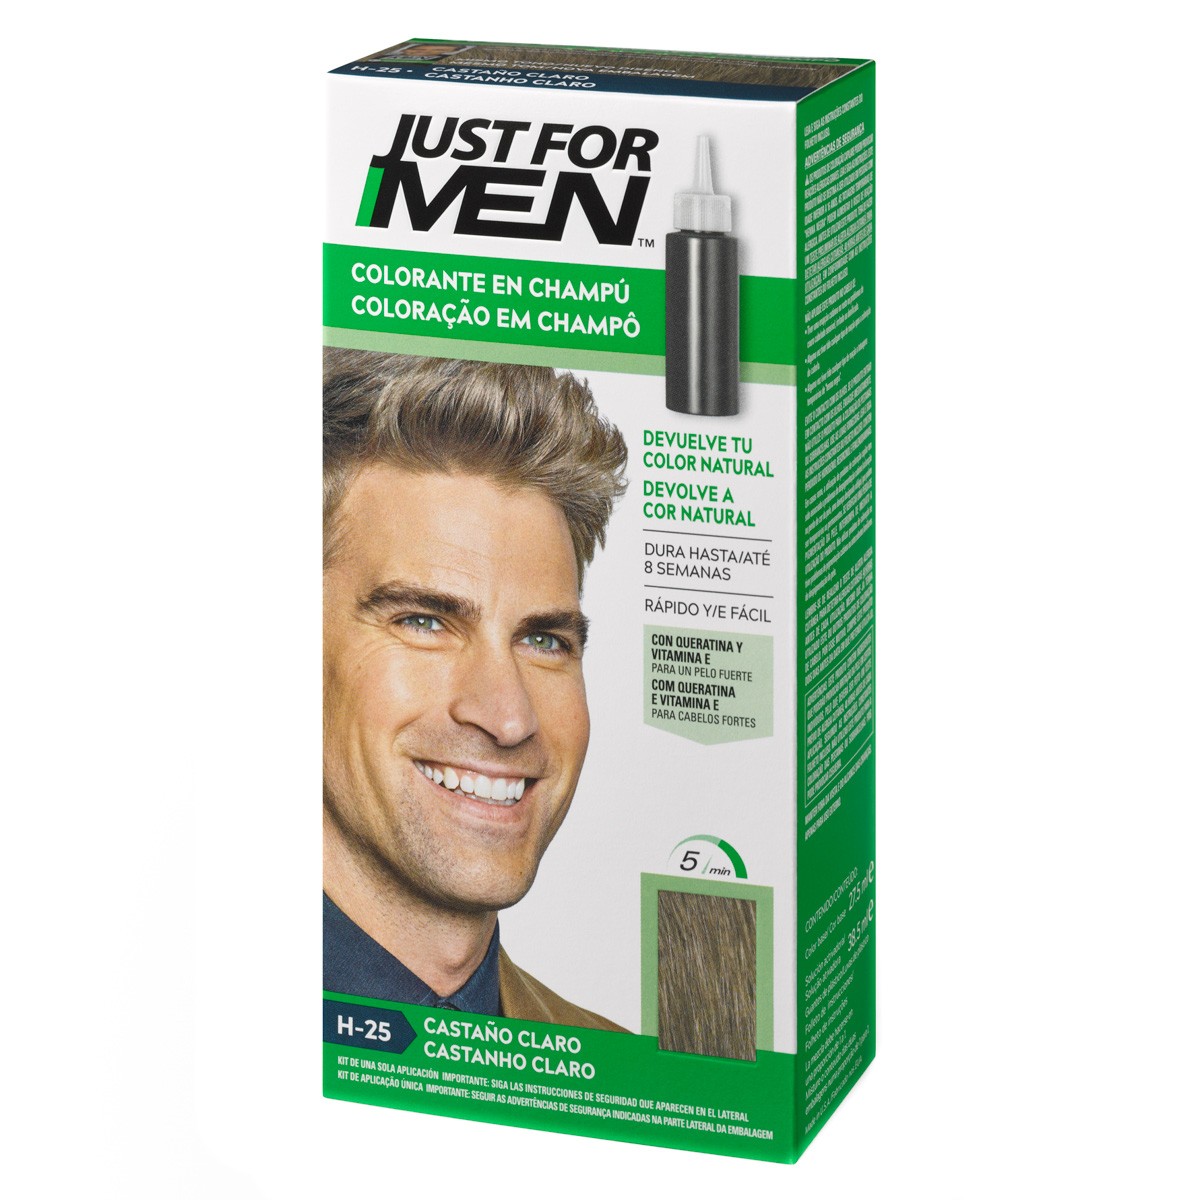 Imagen de Just for men colorante en champú castaño claro